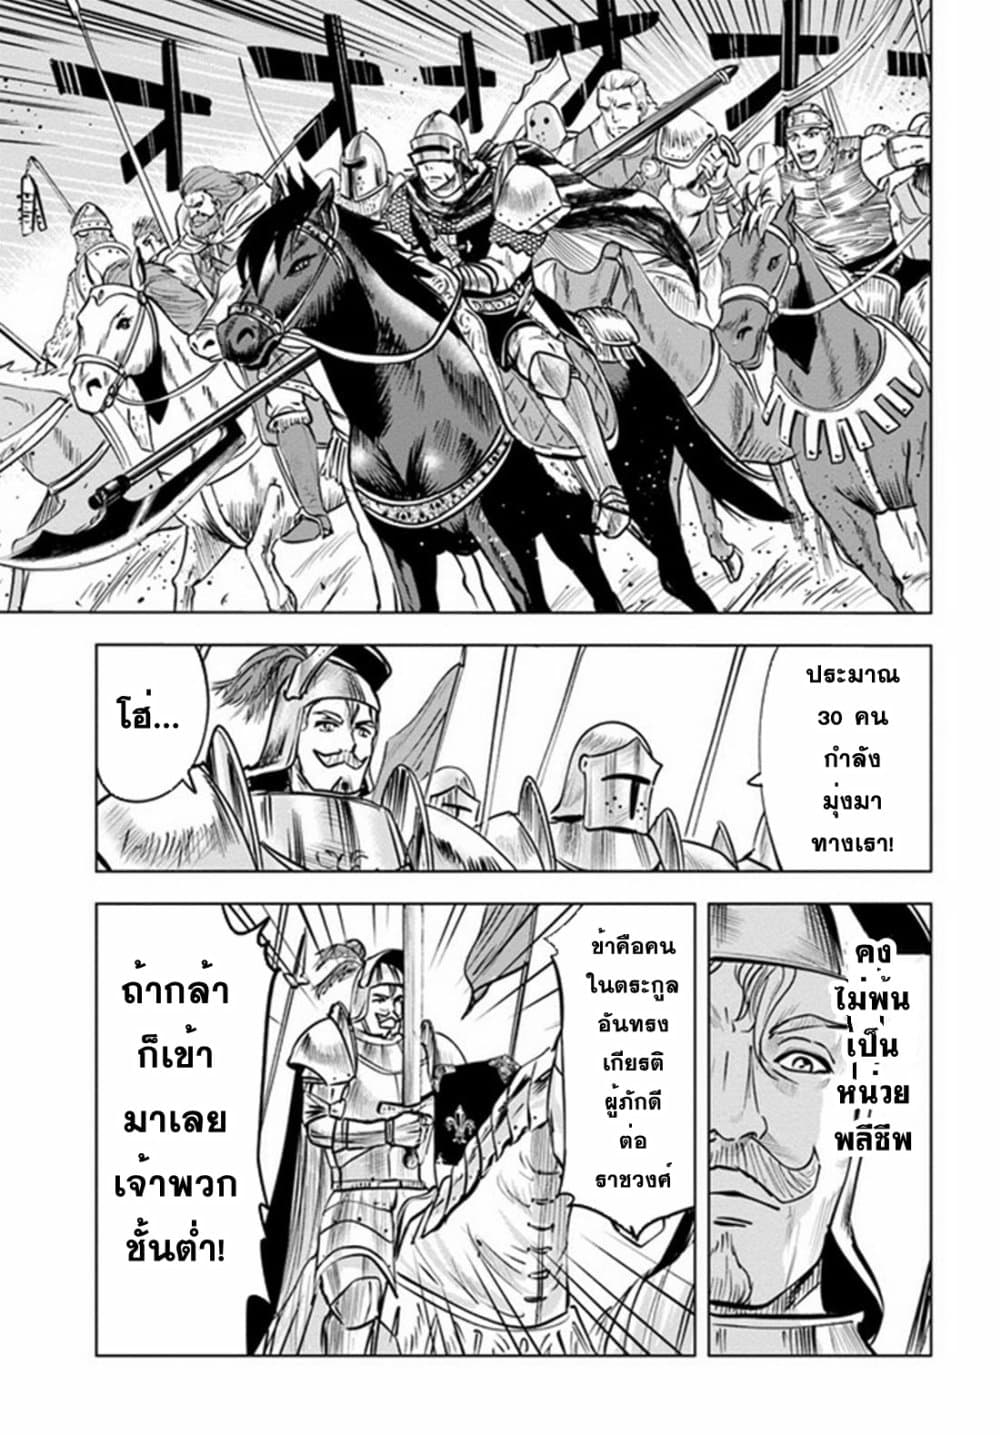 Oukoku e Tsuzuku Michi dorei Kenshi no Nariagari Eiyutan (Haaremu Raifu) - Road to the Kingdom Slave Swordsman the Rise of Heroes - Harem Life 27-27